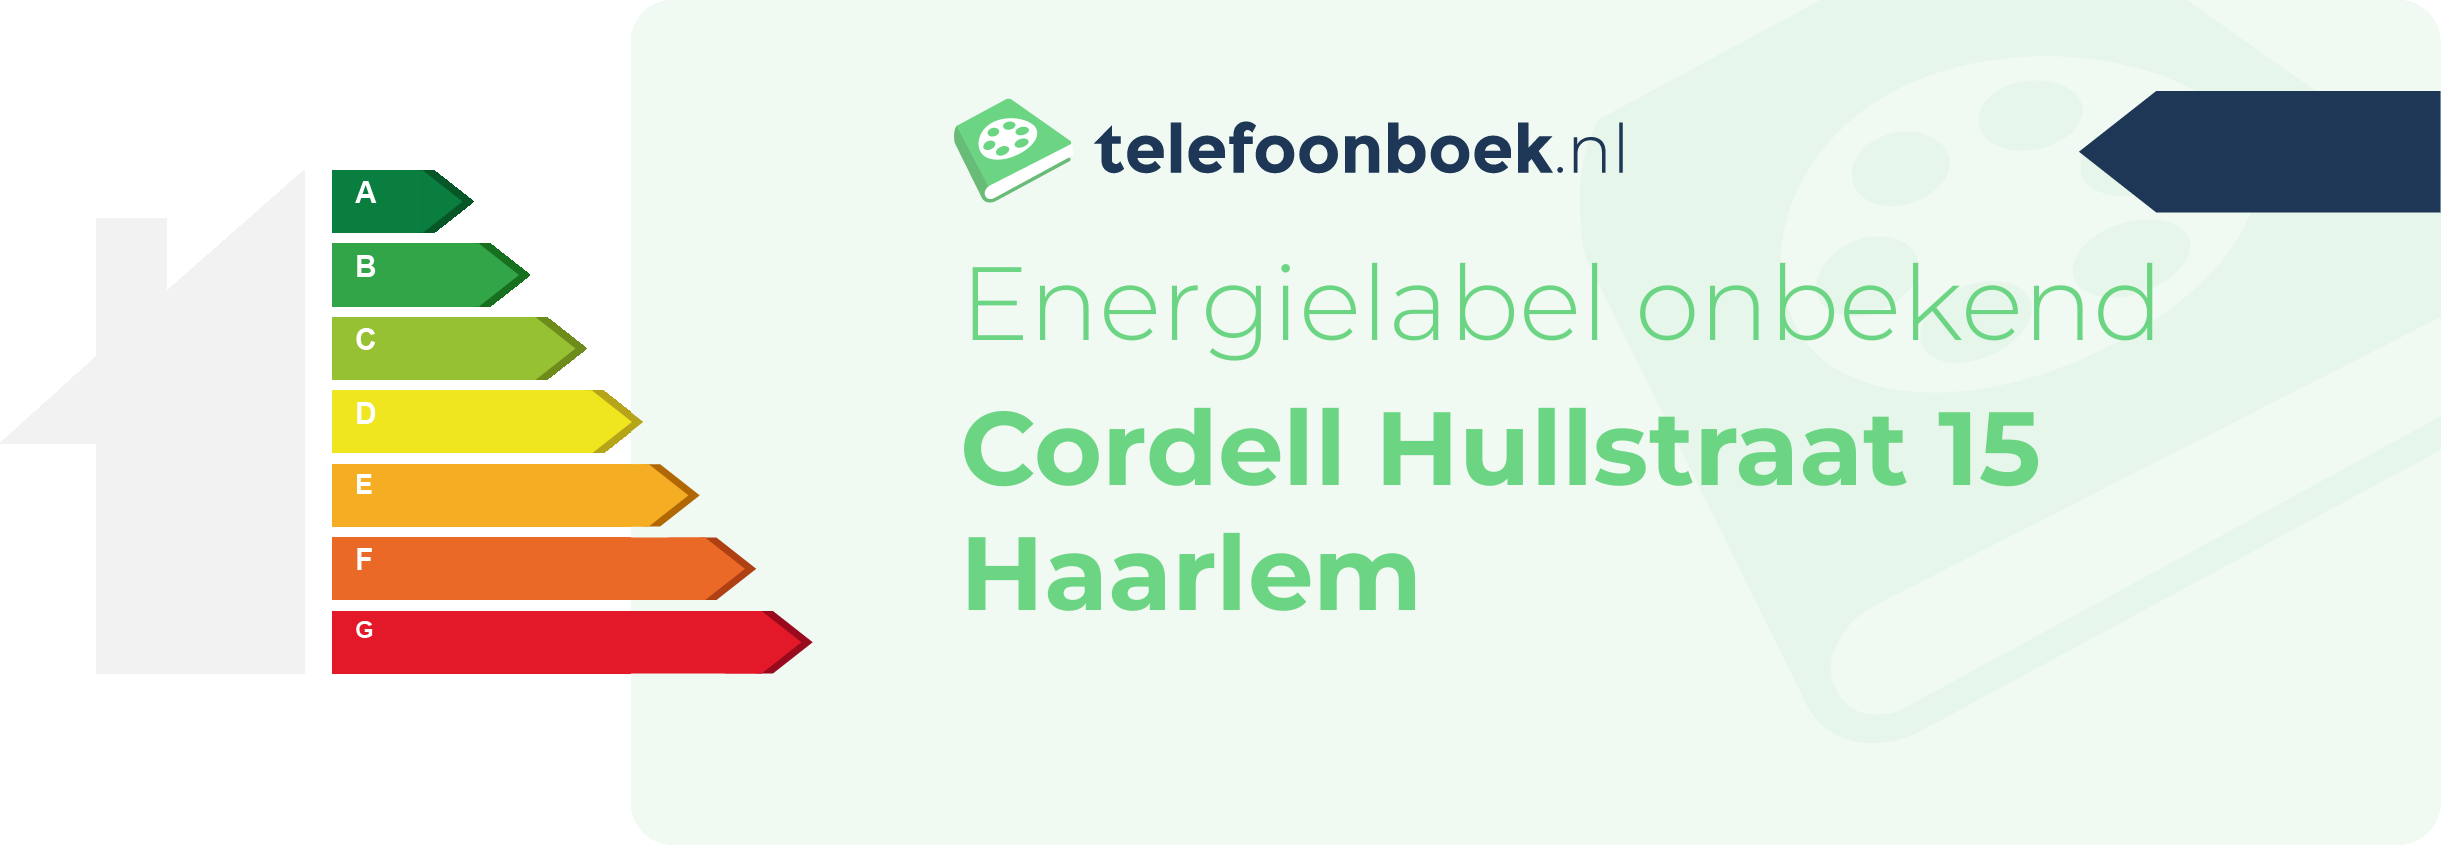 Energielabel Cordell Hullstraat 15 Haarlem